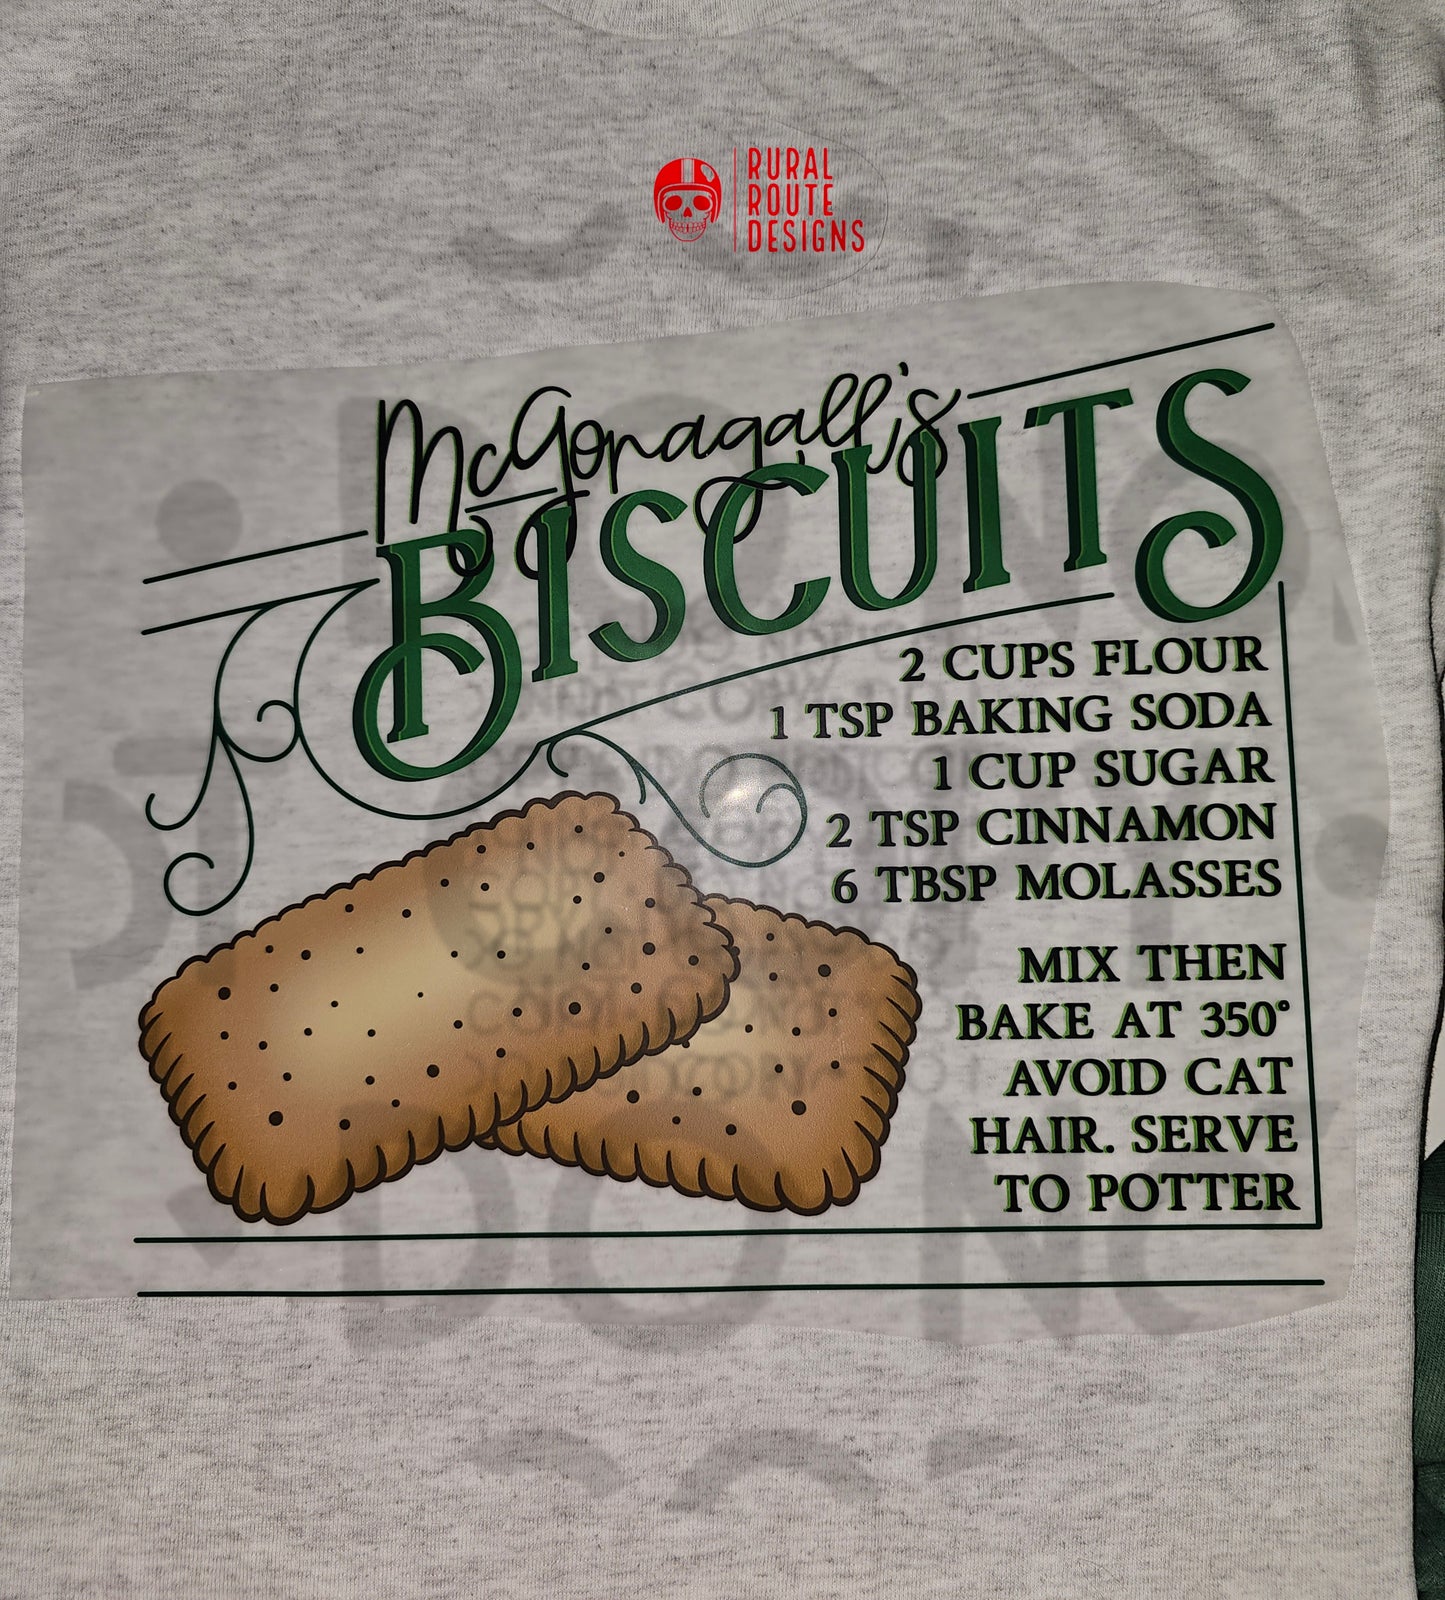 Mcgonagall's Biscuit